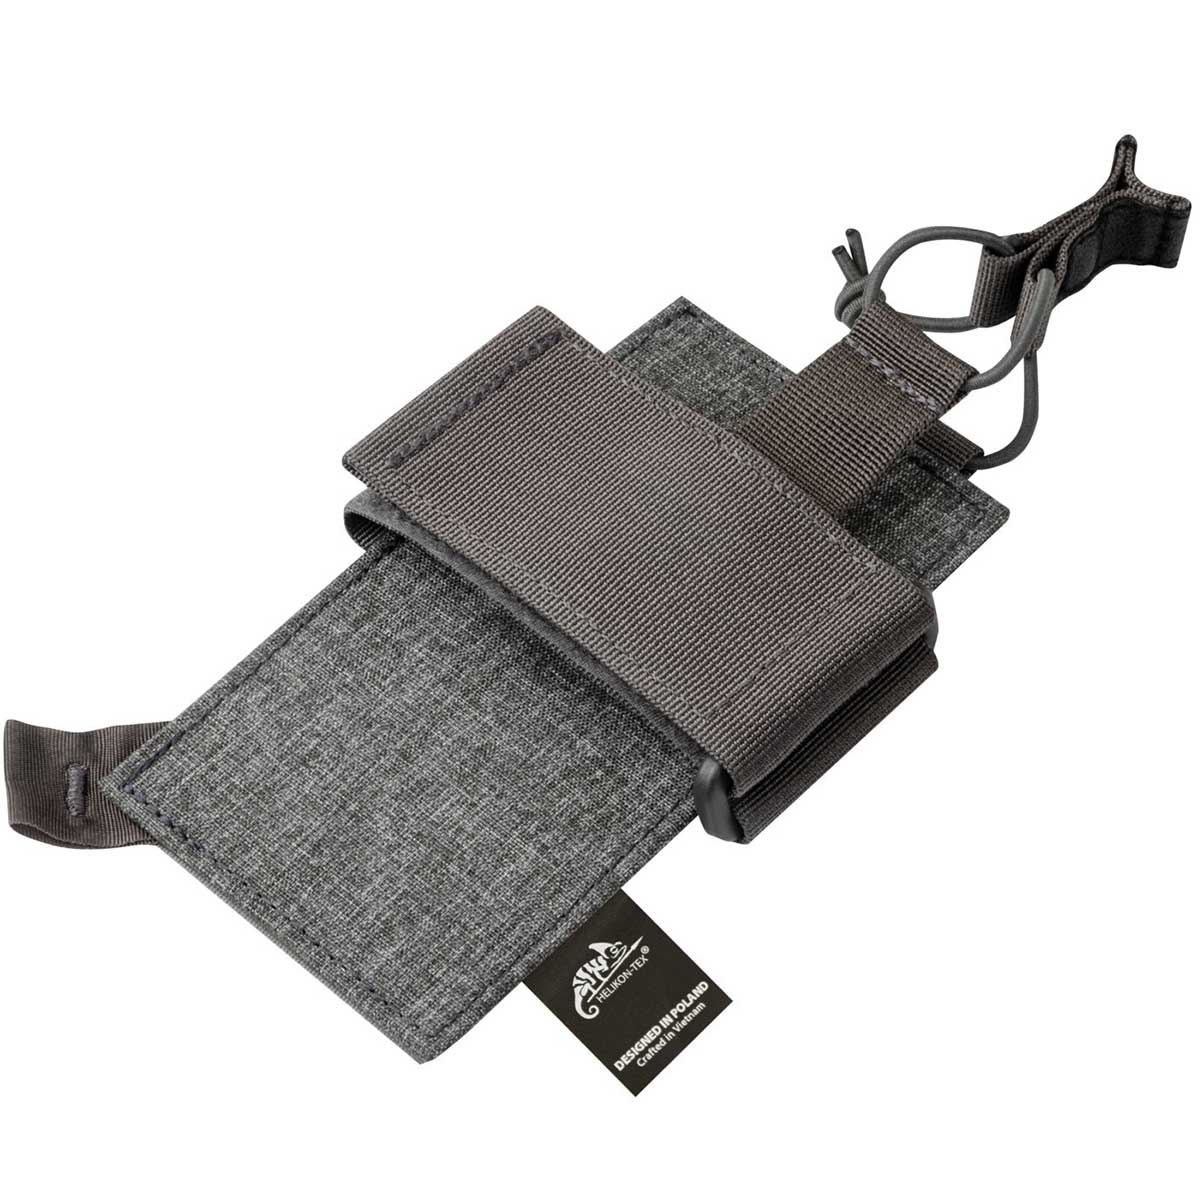 Kabura Helikon Inverted Pistol Holder Insert Nylon / Polyester Blend - Melange Grey